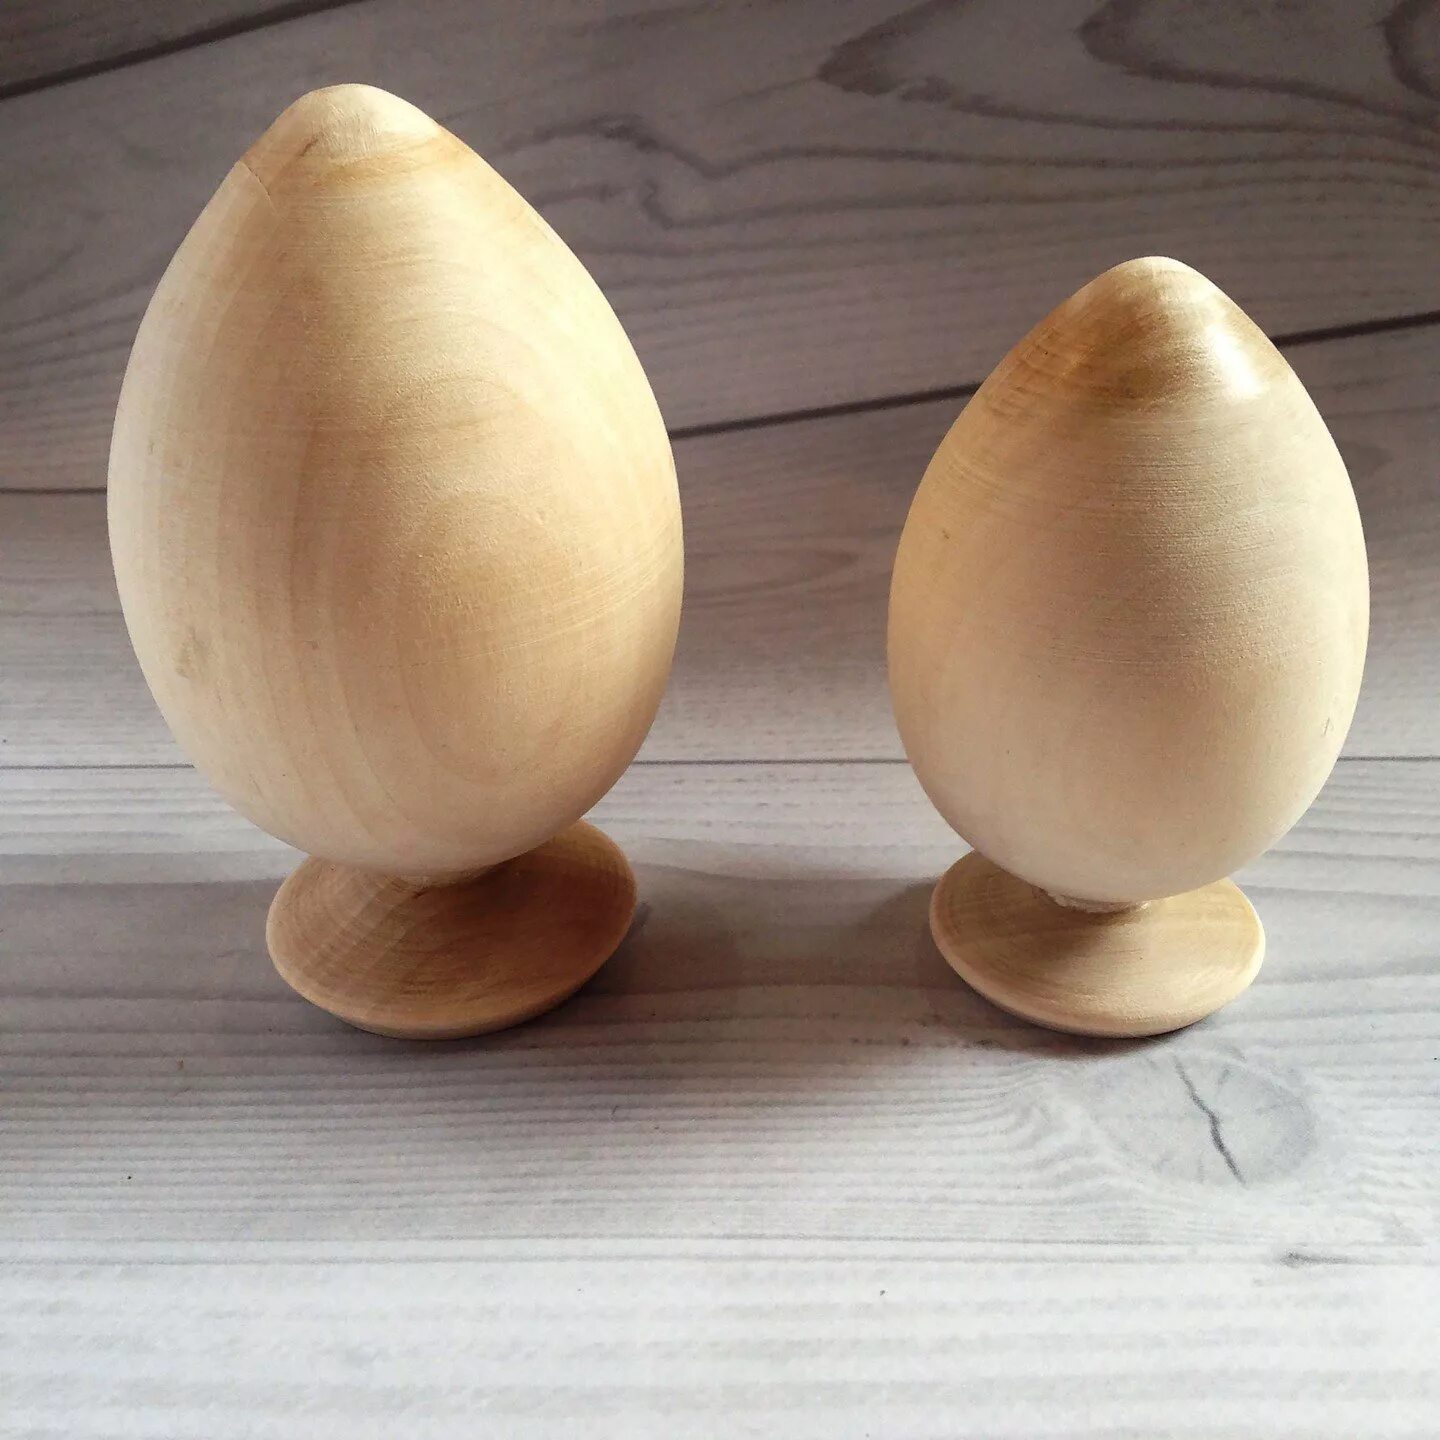 Заготовка пасхального яйца. Яйцо из дерева. Яйцо деревянное заготовка. Яйцо деревянное на подставке. Пасхальное яйцо из дерева.